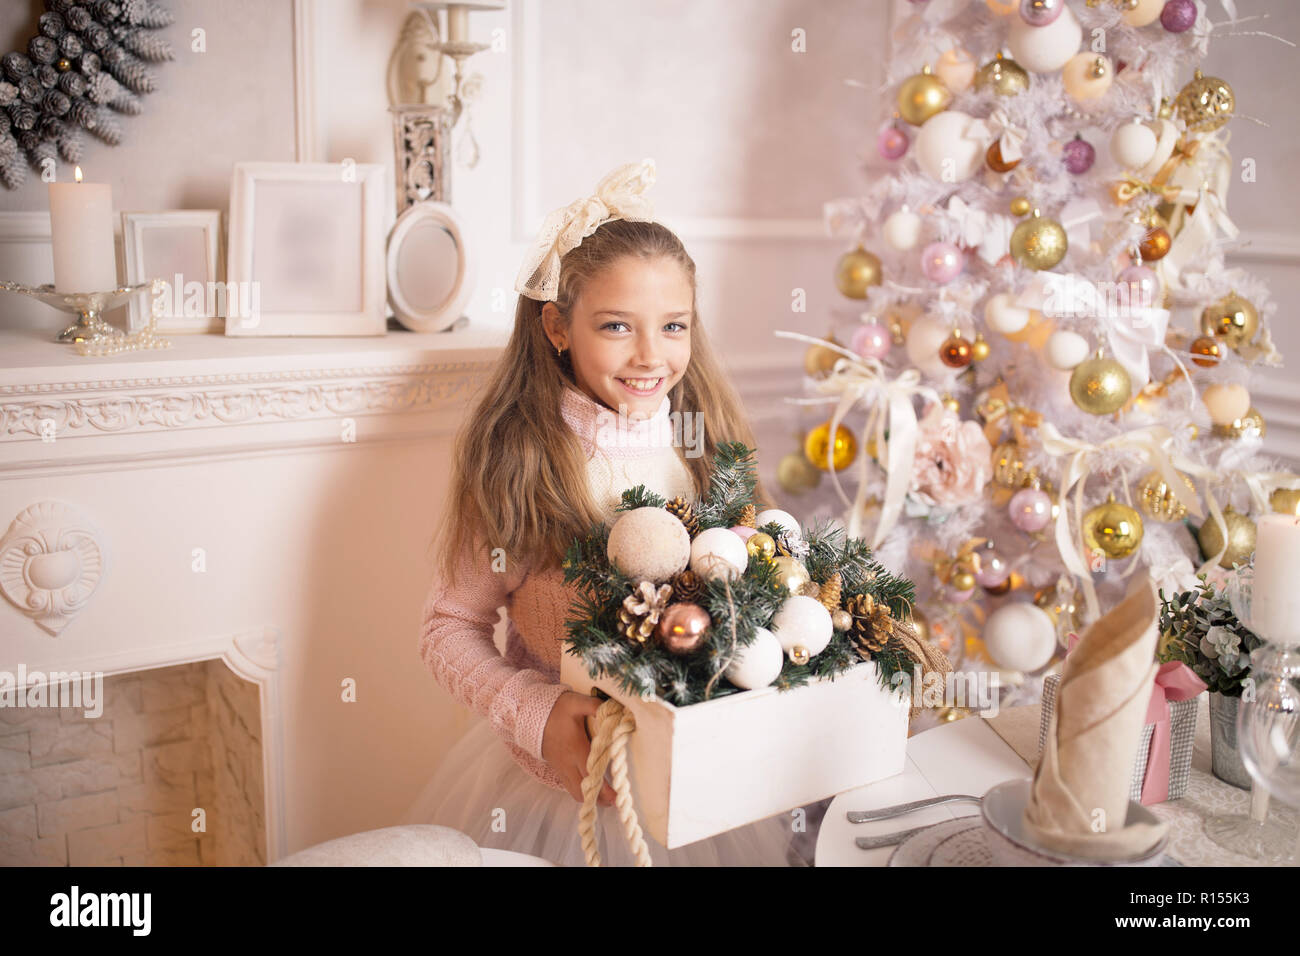 Frohe Weihnachten feiern. Schöne Mädchen in ein Kleid in der Nähe von Den Weihnachtsbaum. Winterurlaub. Frohes neues Jahr. Stockfoto